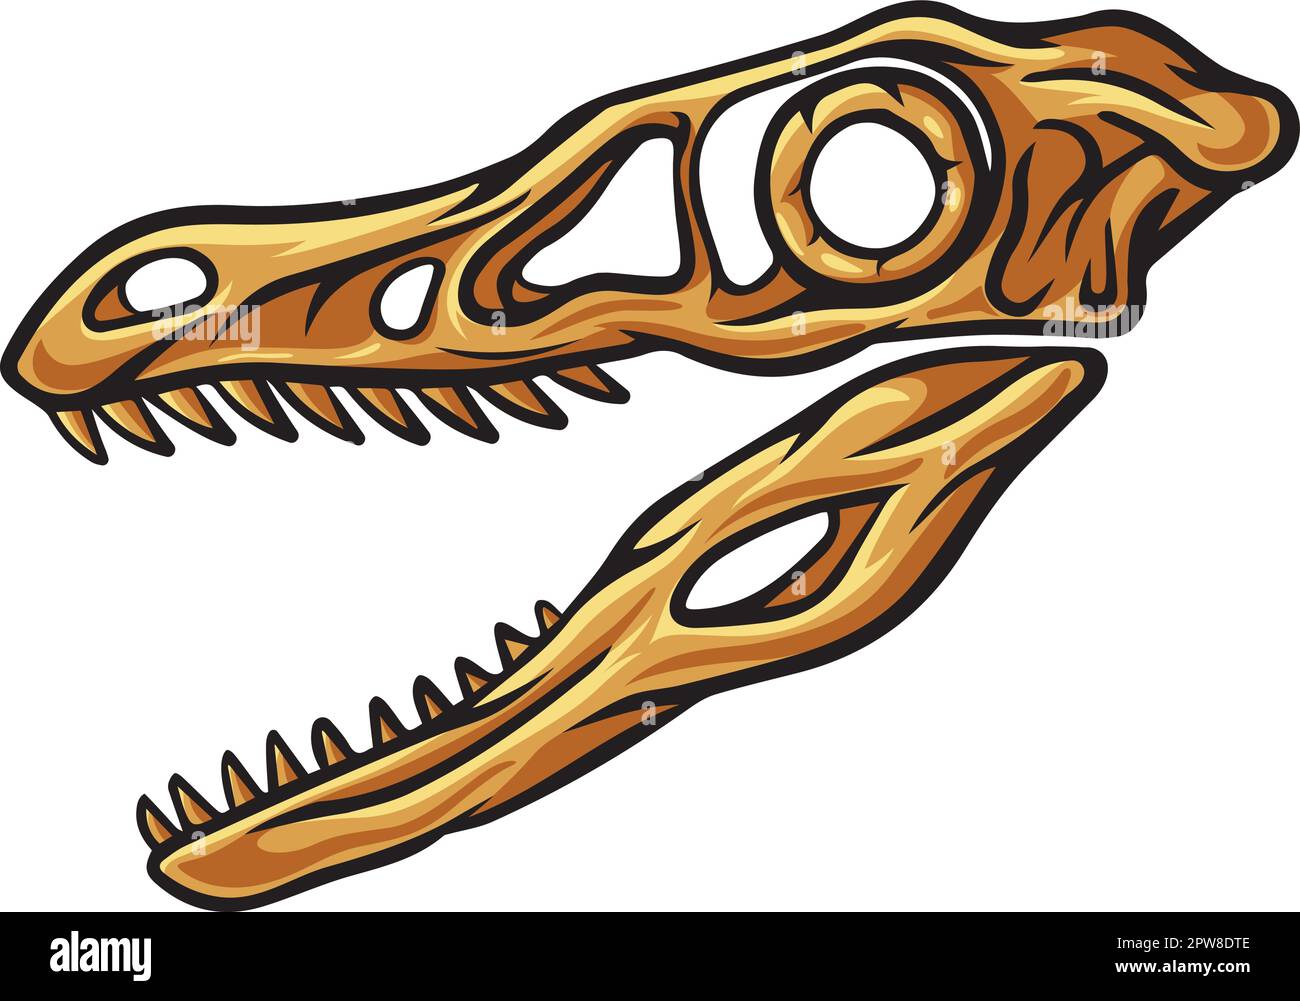 Velociraptor dinosaur skull fossil Stock Vector